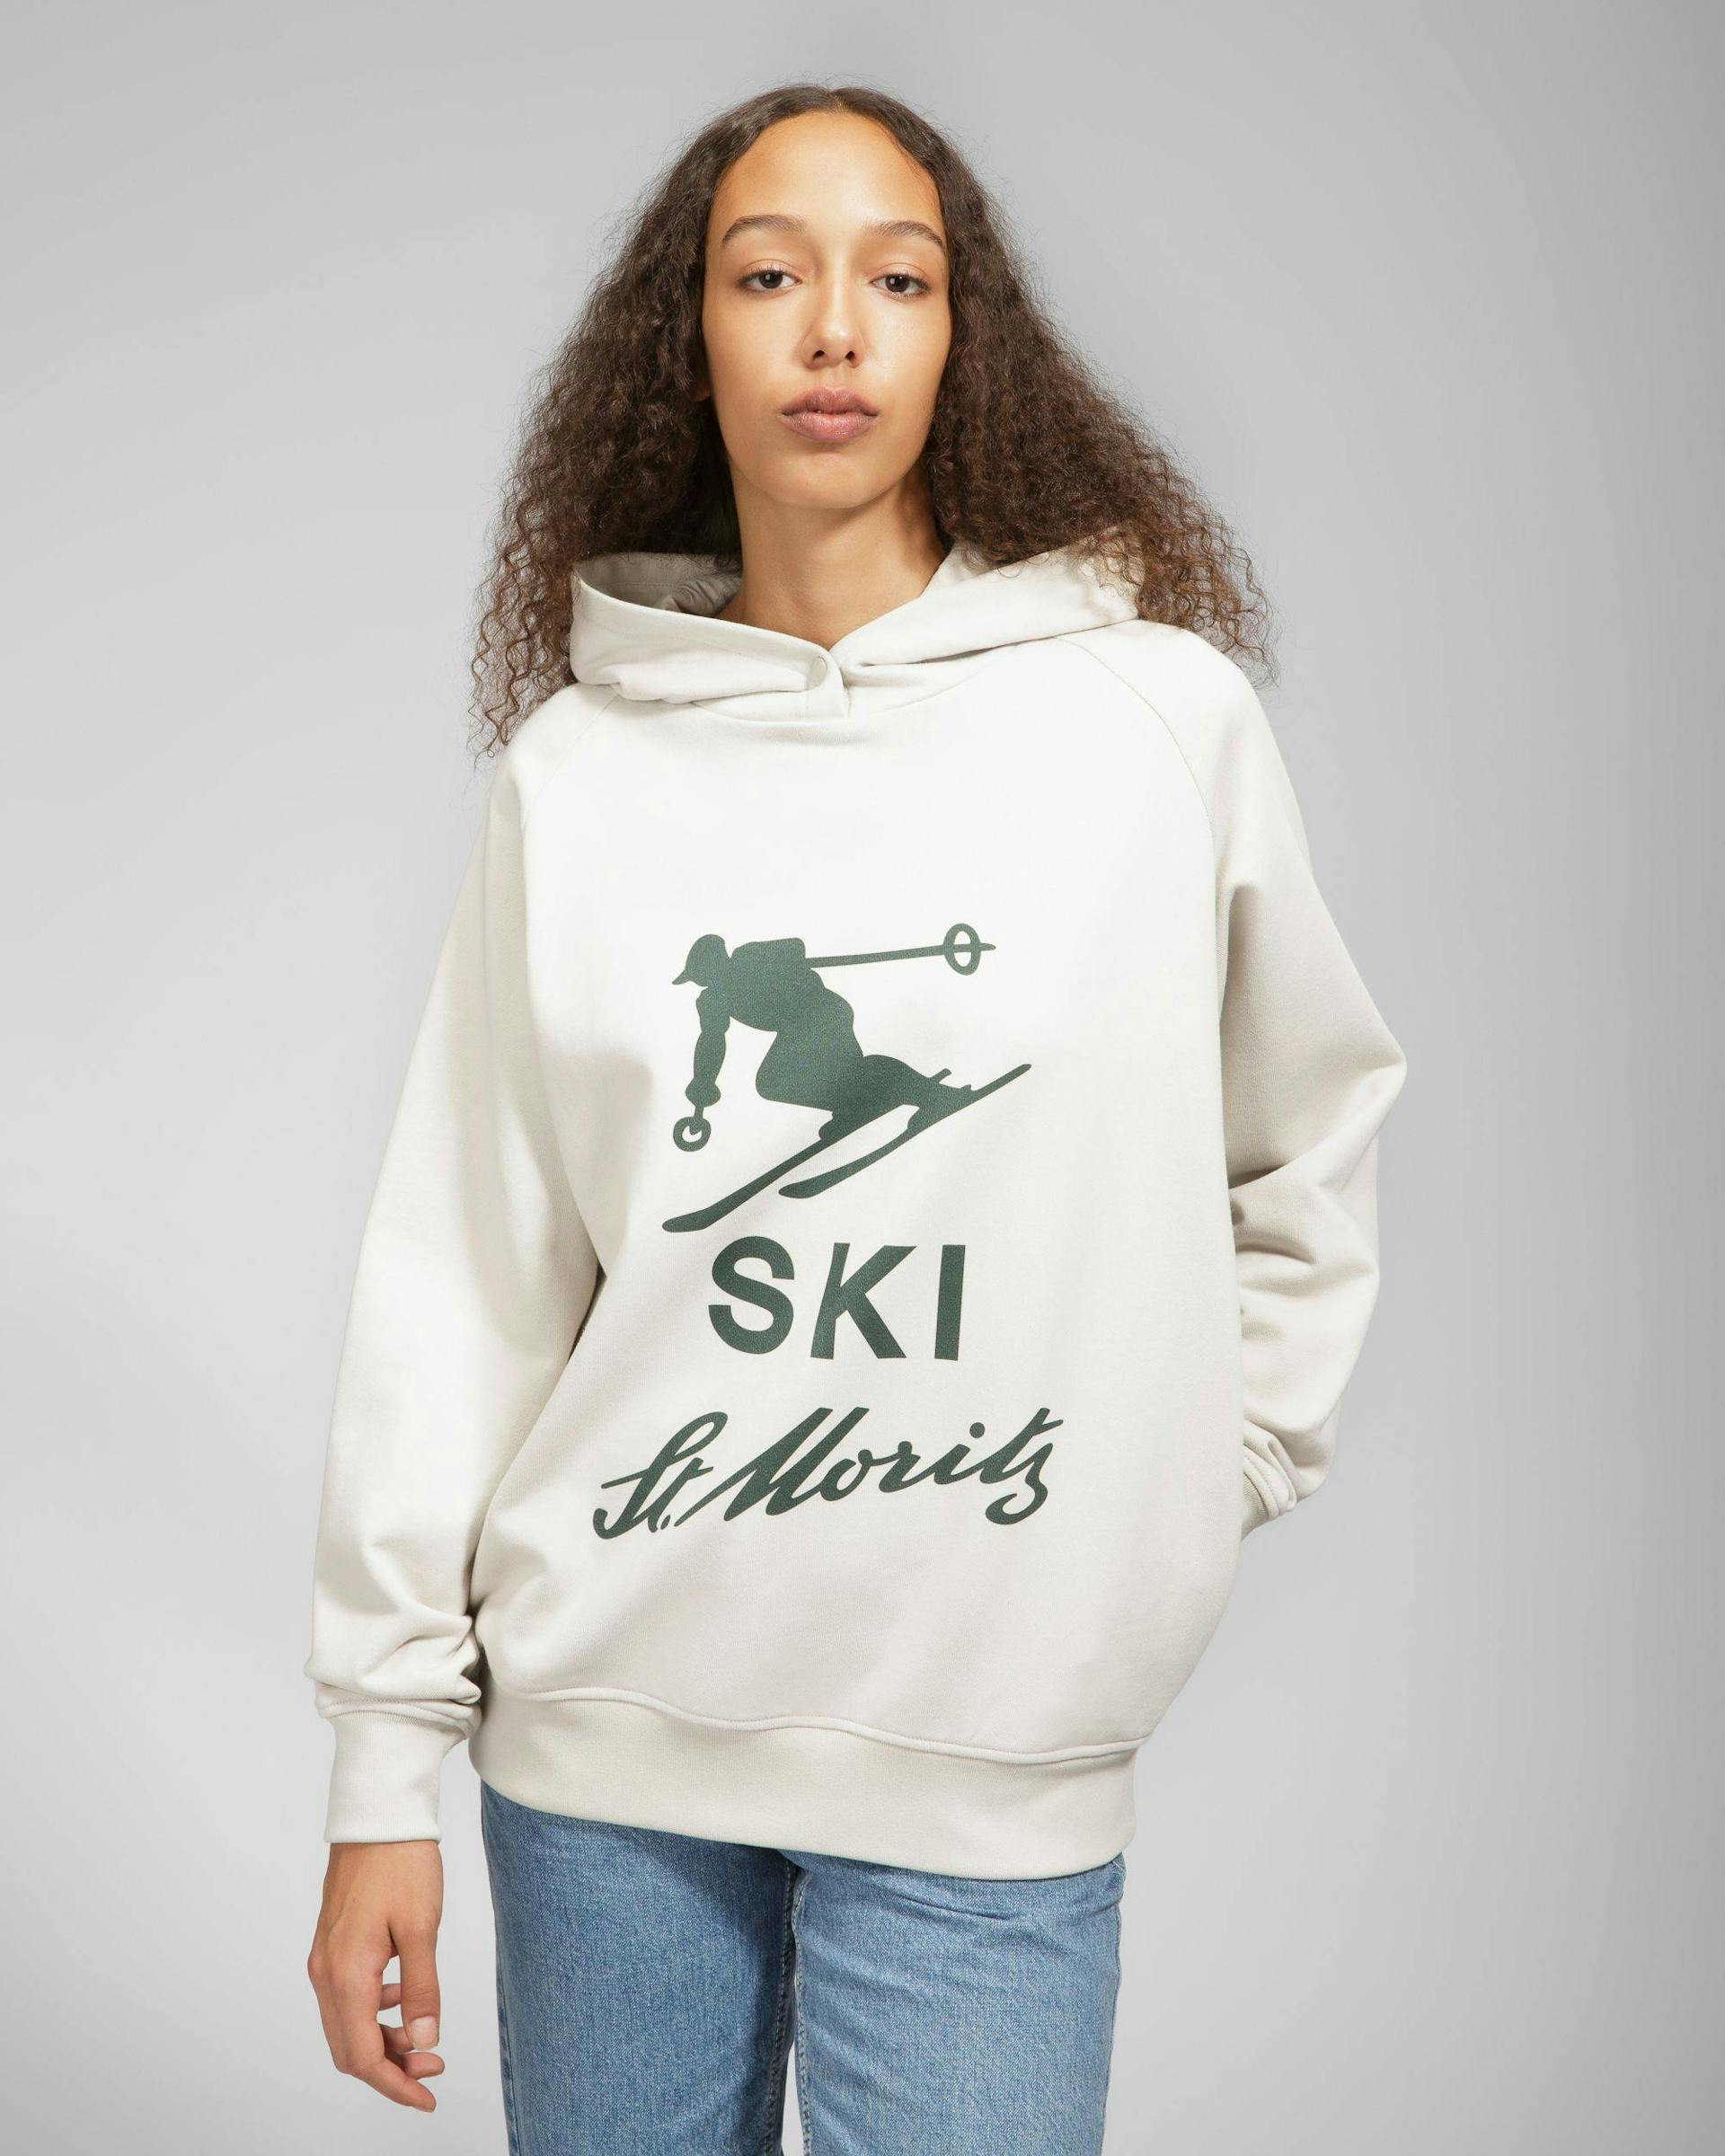 Ã€ Capuche Ski St Moritz Sweat-shirt - Bally